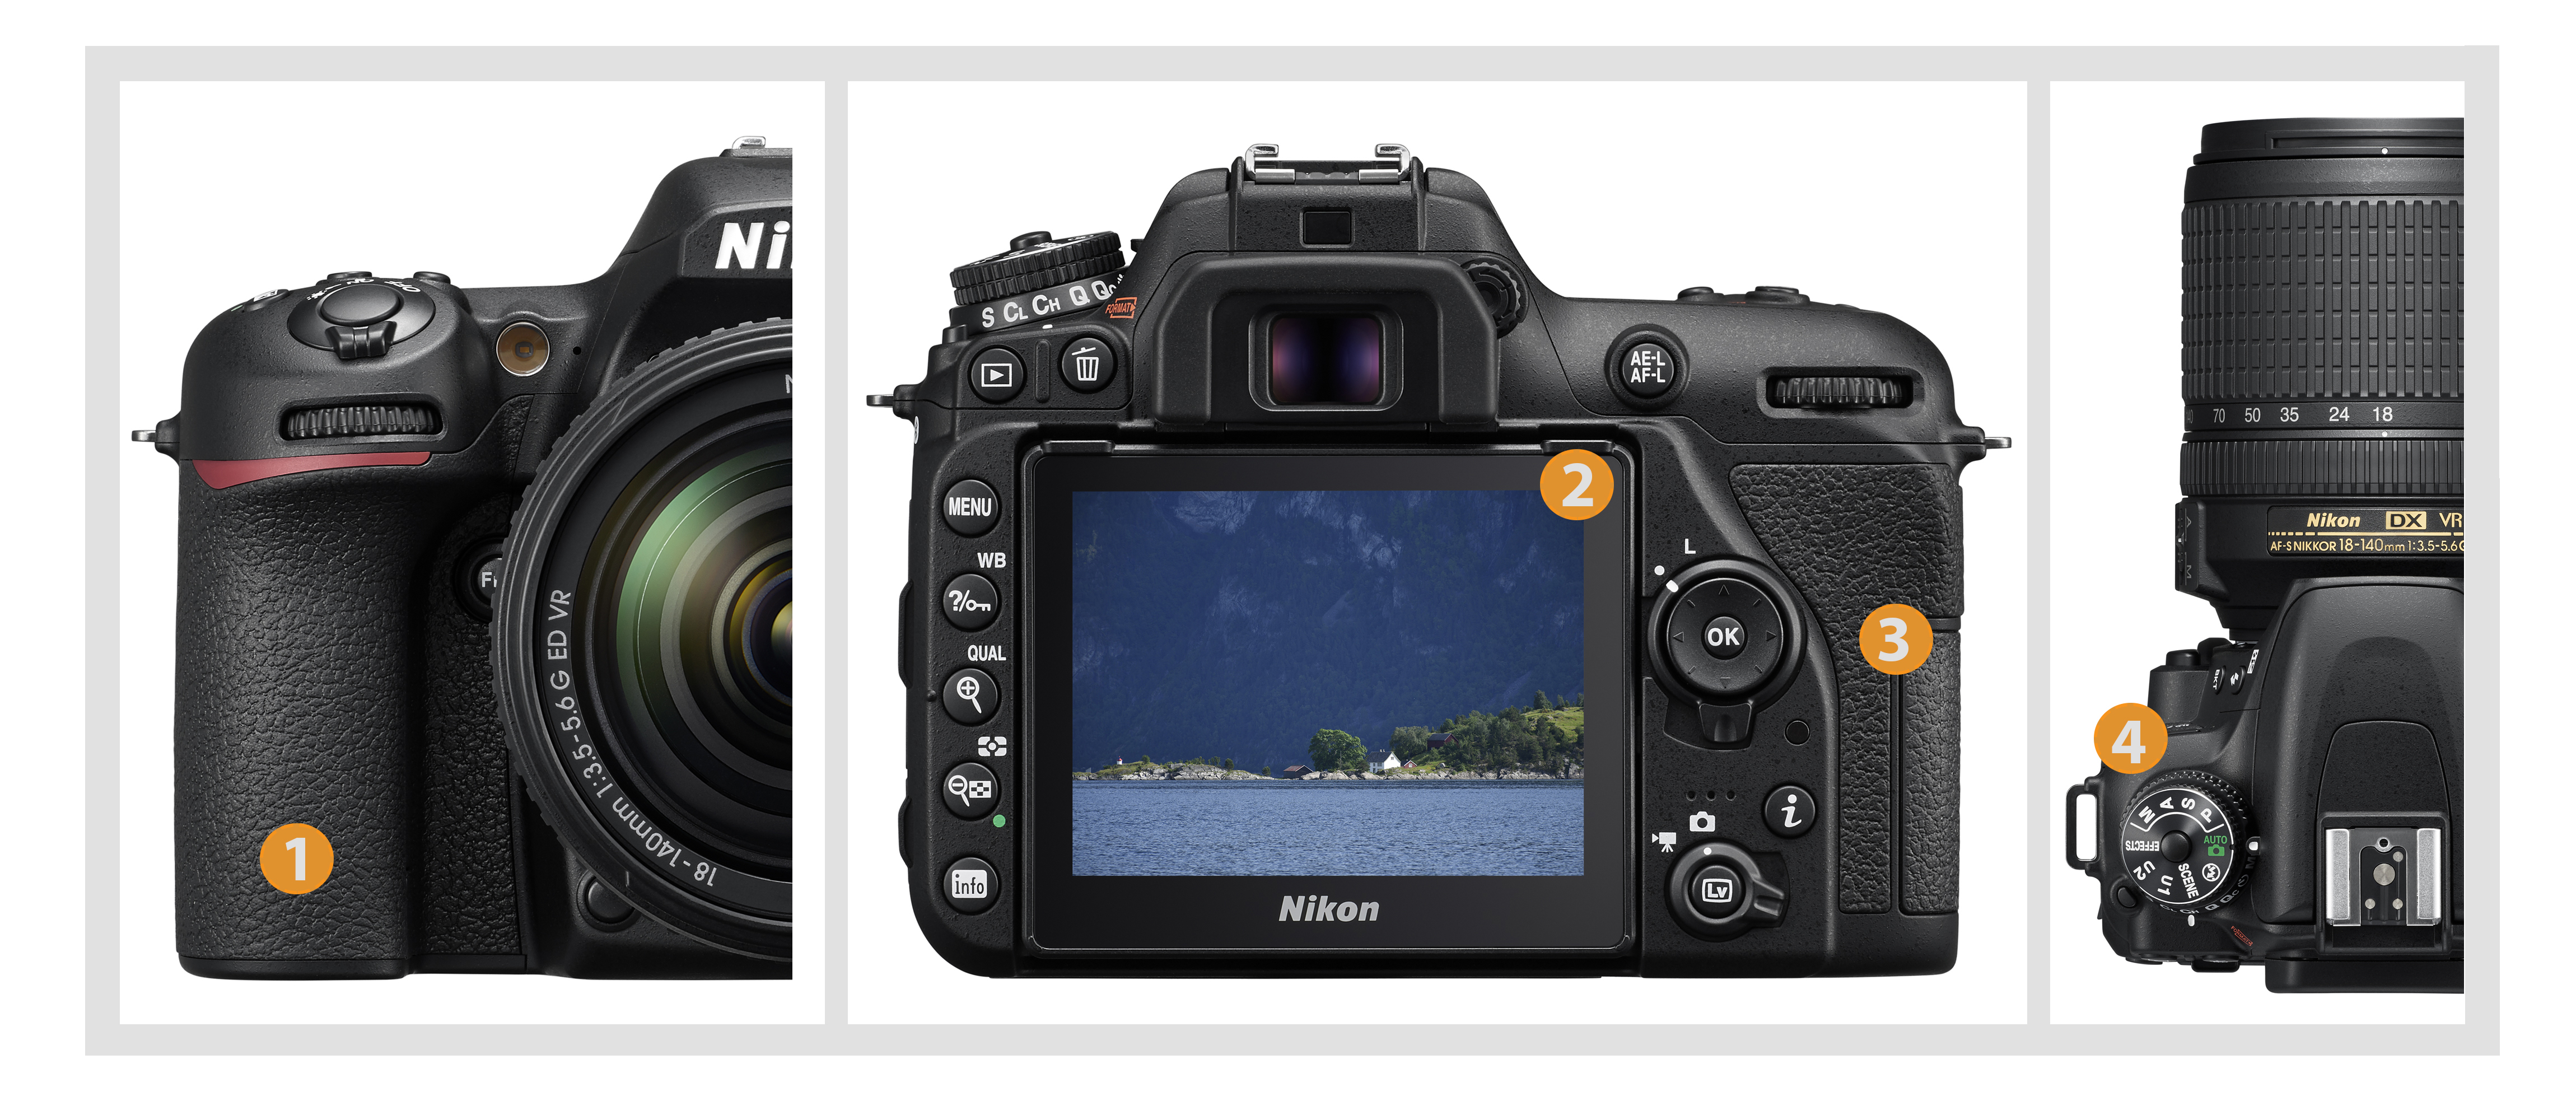 Nikon D7500 review